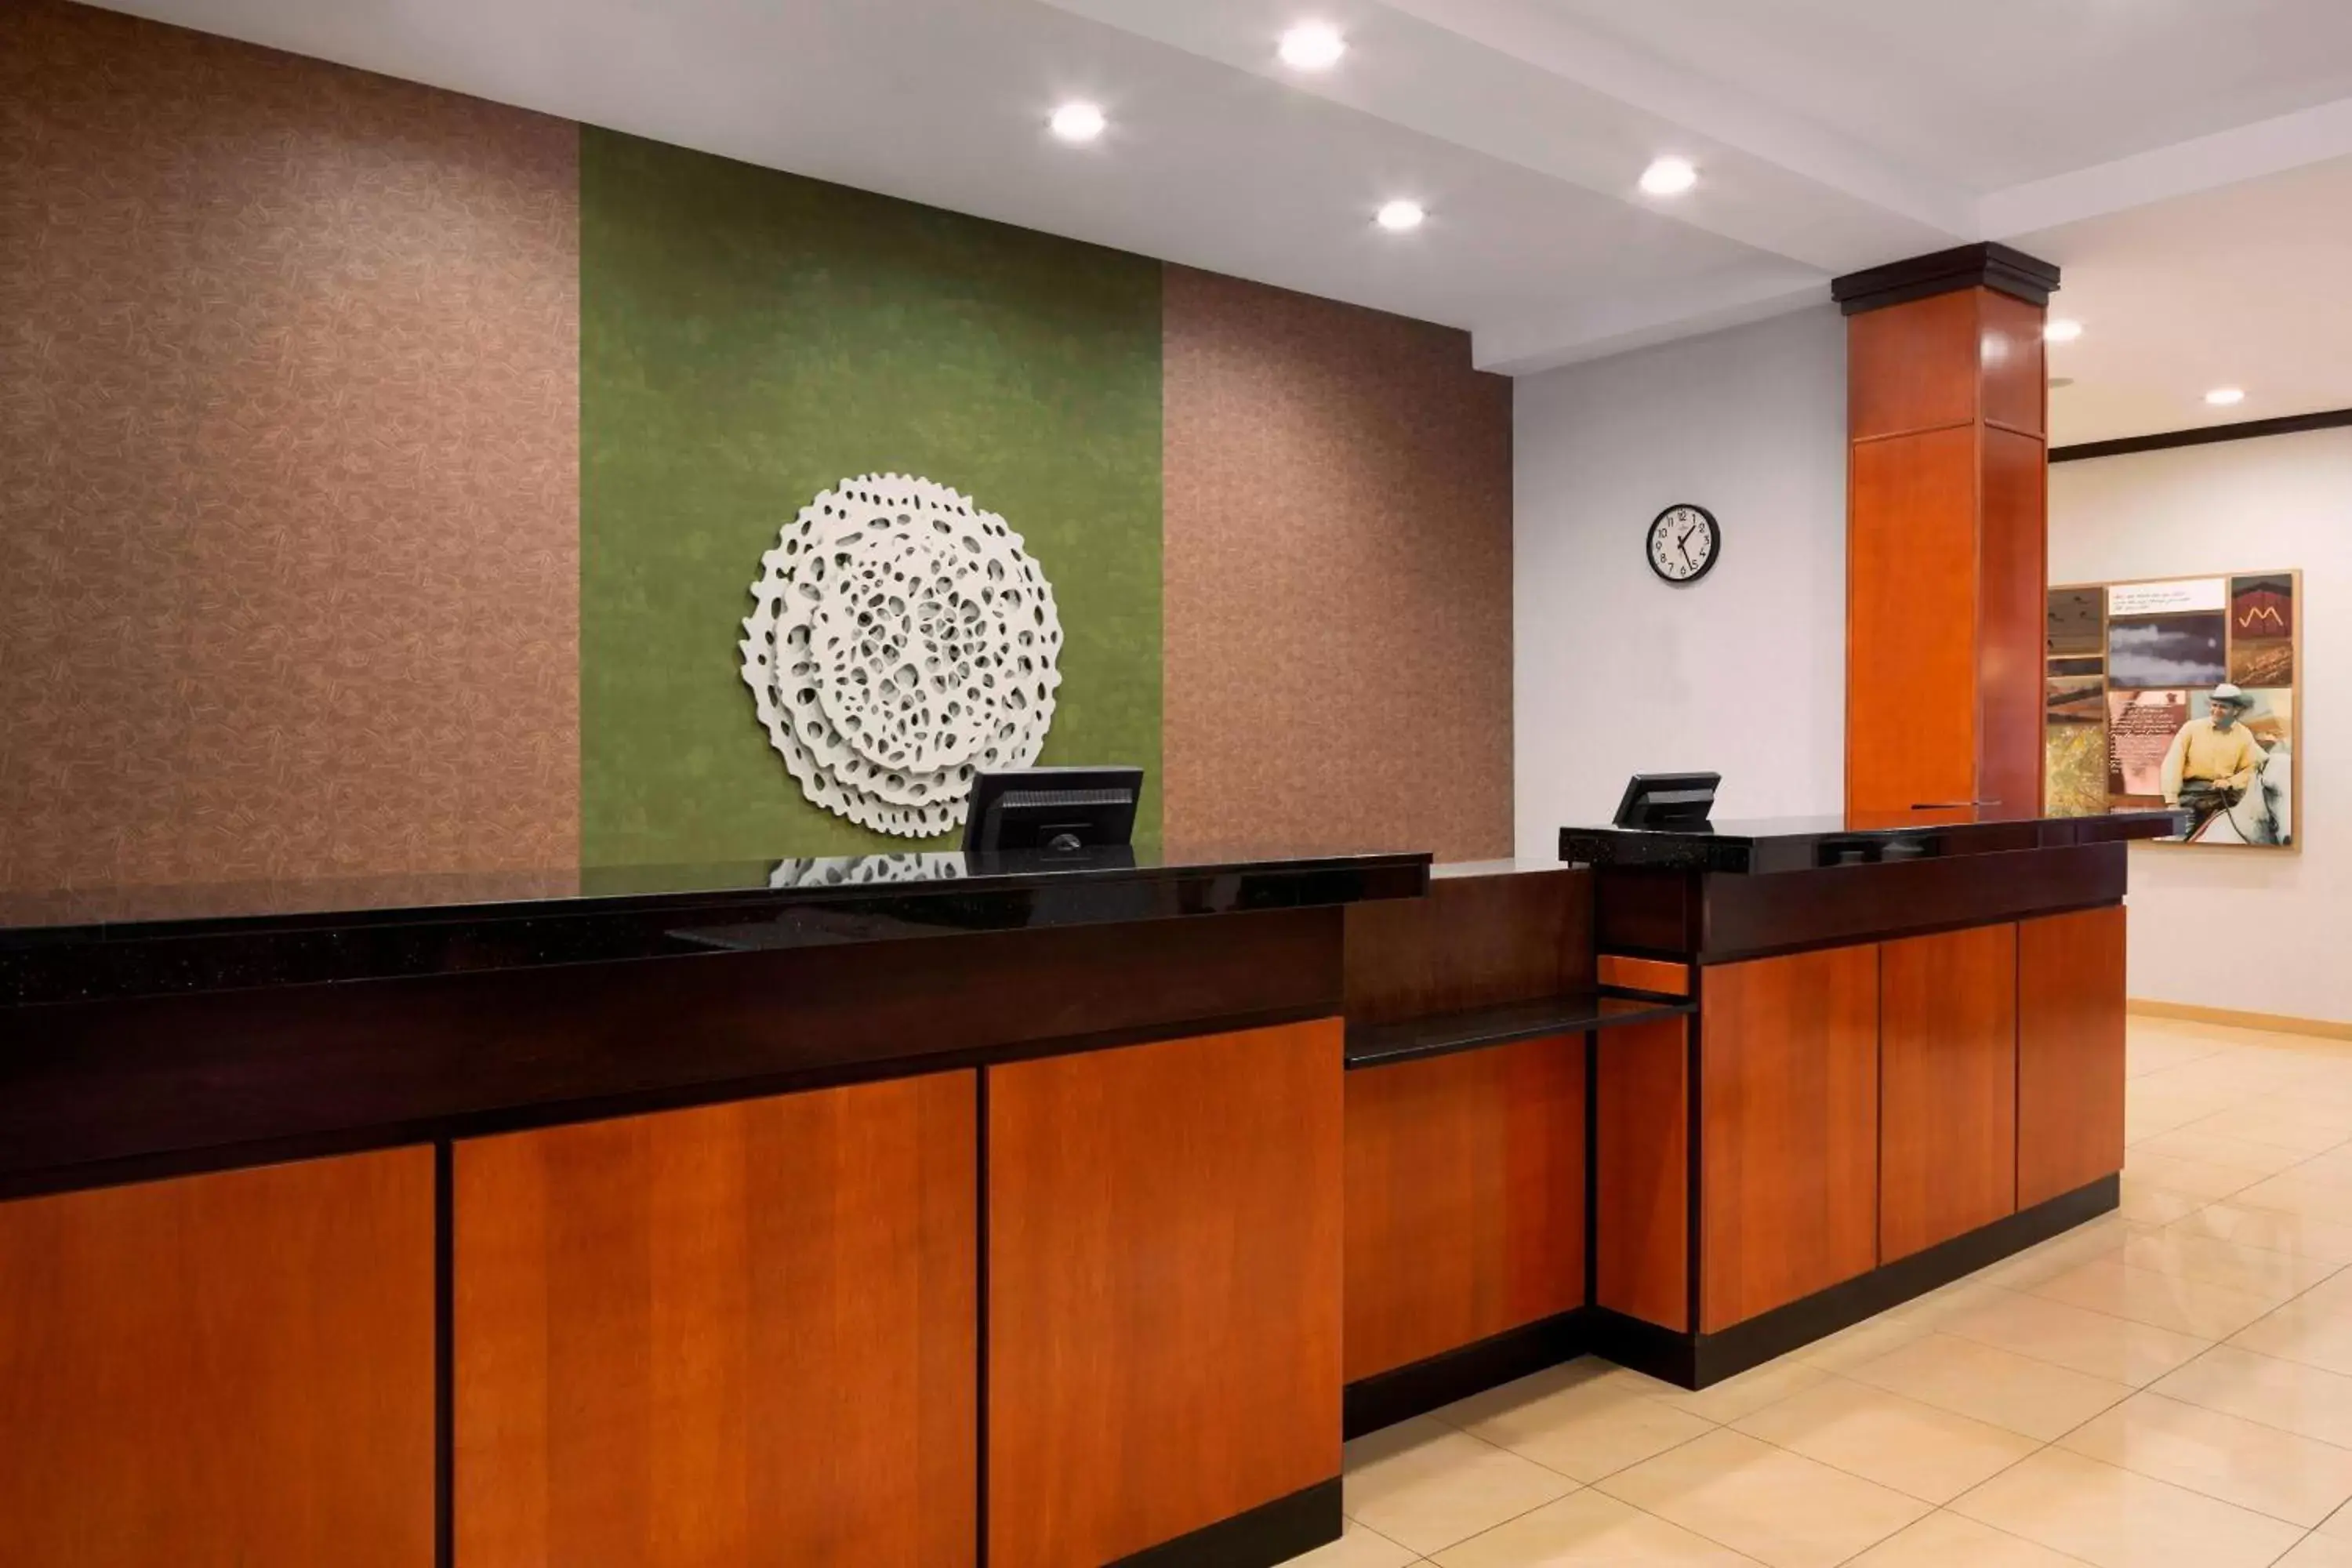 Lobby or reception, Lobby/Reception in Fairfield Inn & Suites by Marriott Selma Kingsburg